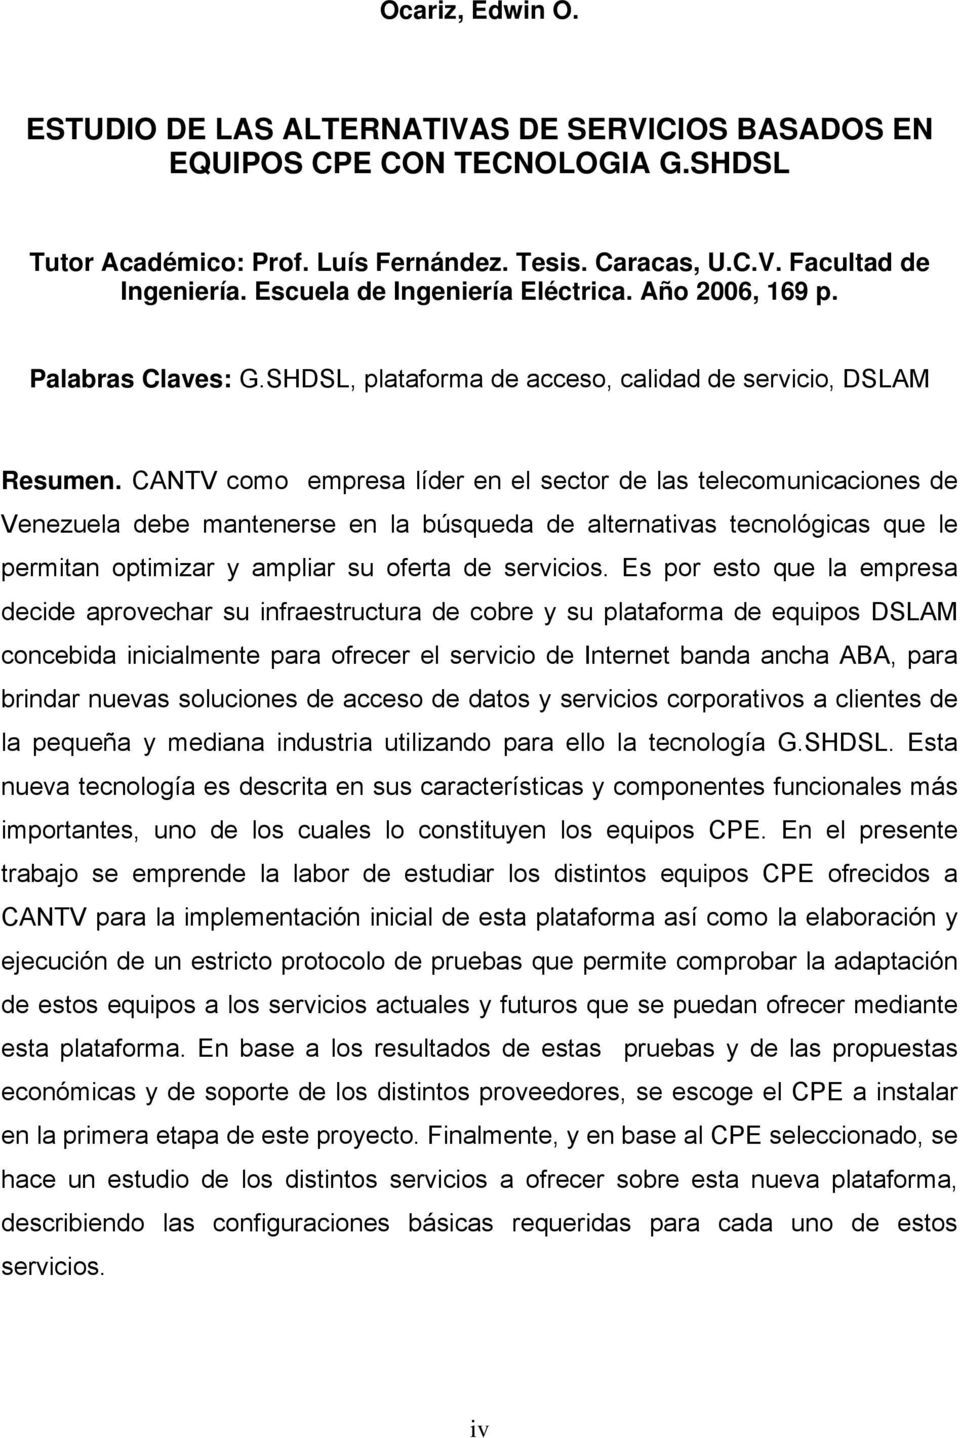 CANTV como empresa líder en el sector de las telecomunicaciones de Venezuela debe mantenerse en la búsqueda de alternativas tecnológicas que le permitan optimizar y ampliar su oferta de servicios.